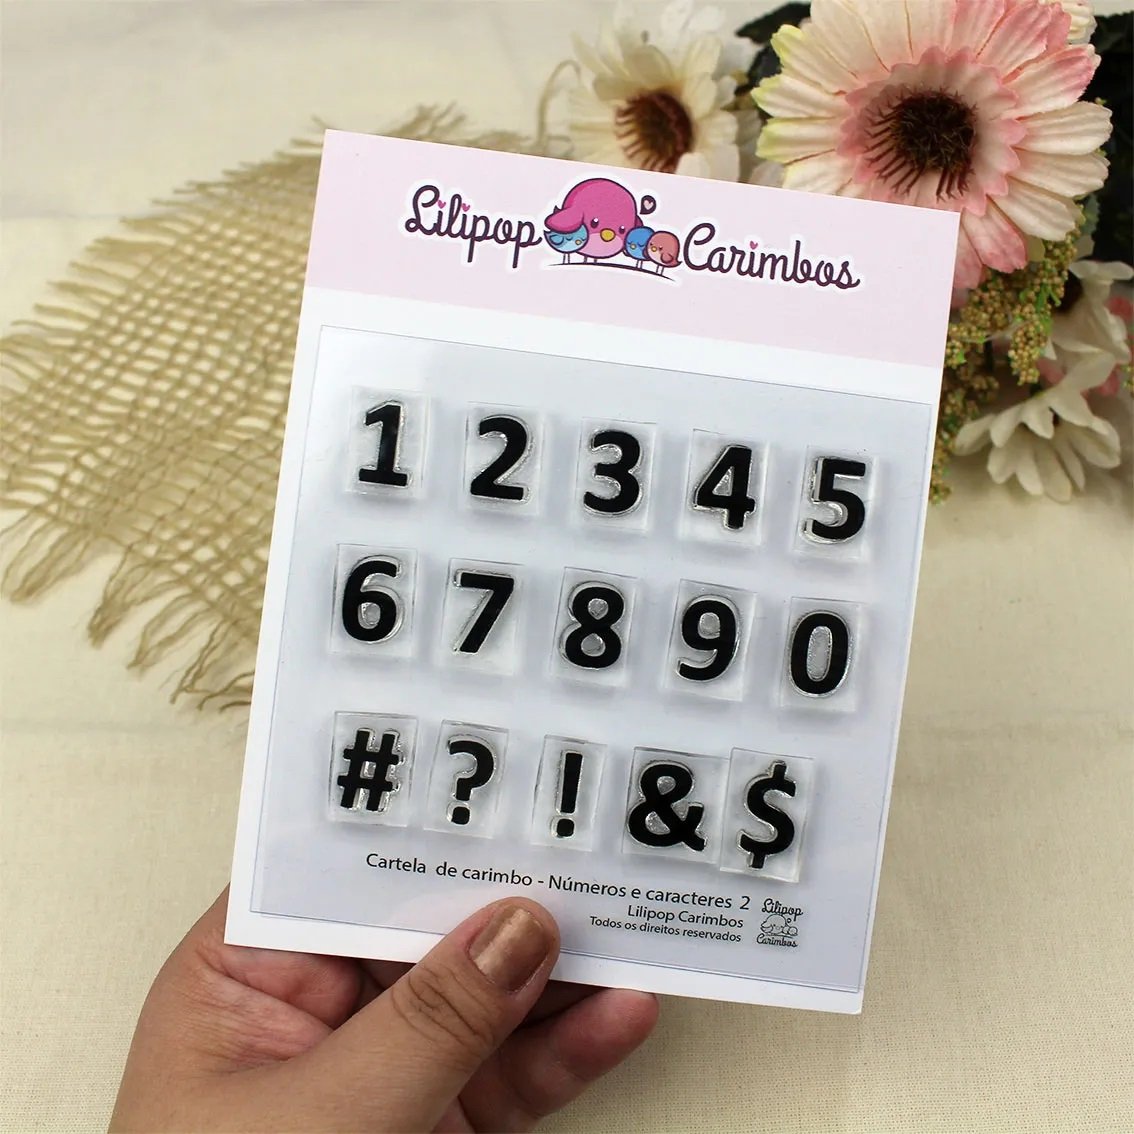 Cartela de Carimbos - "Números e caracteres 2" - Lilipop Carimbos